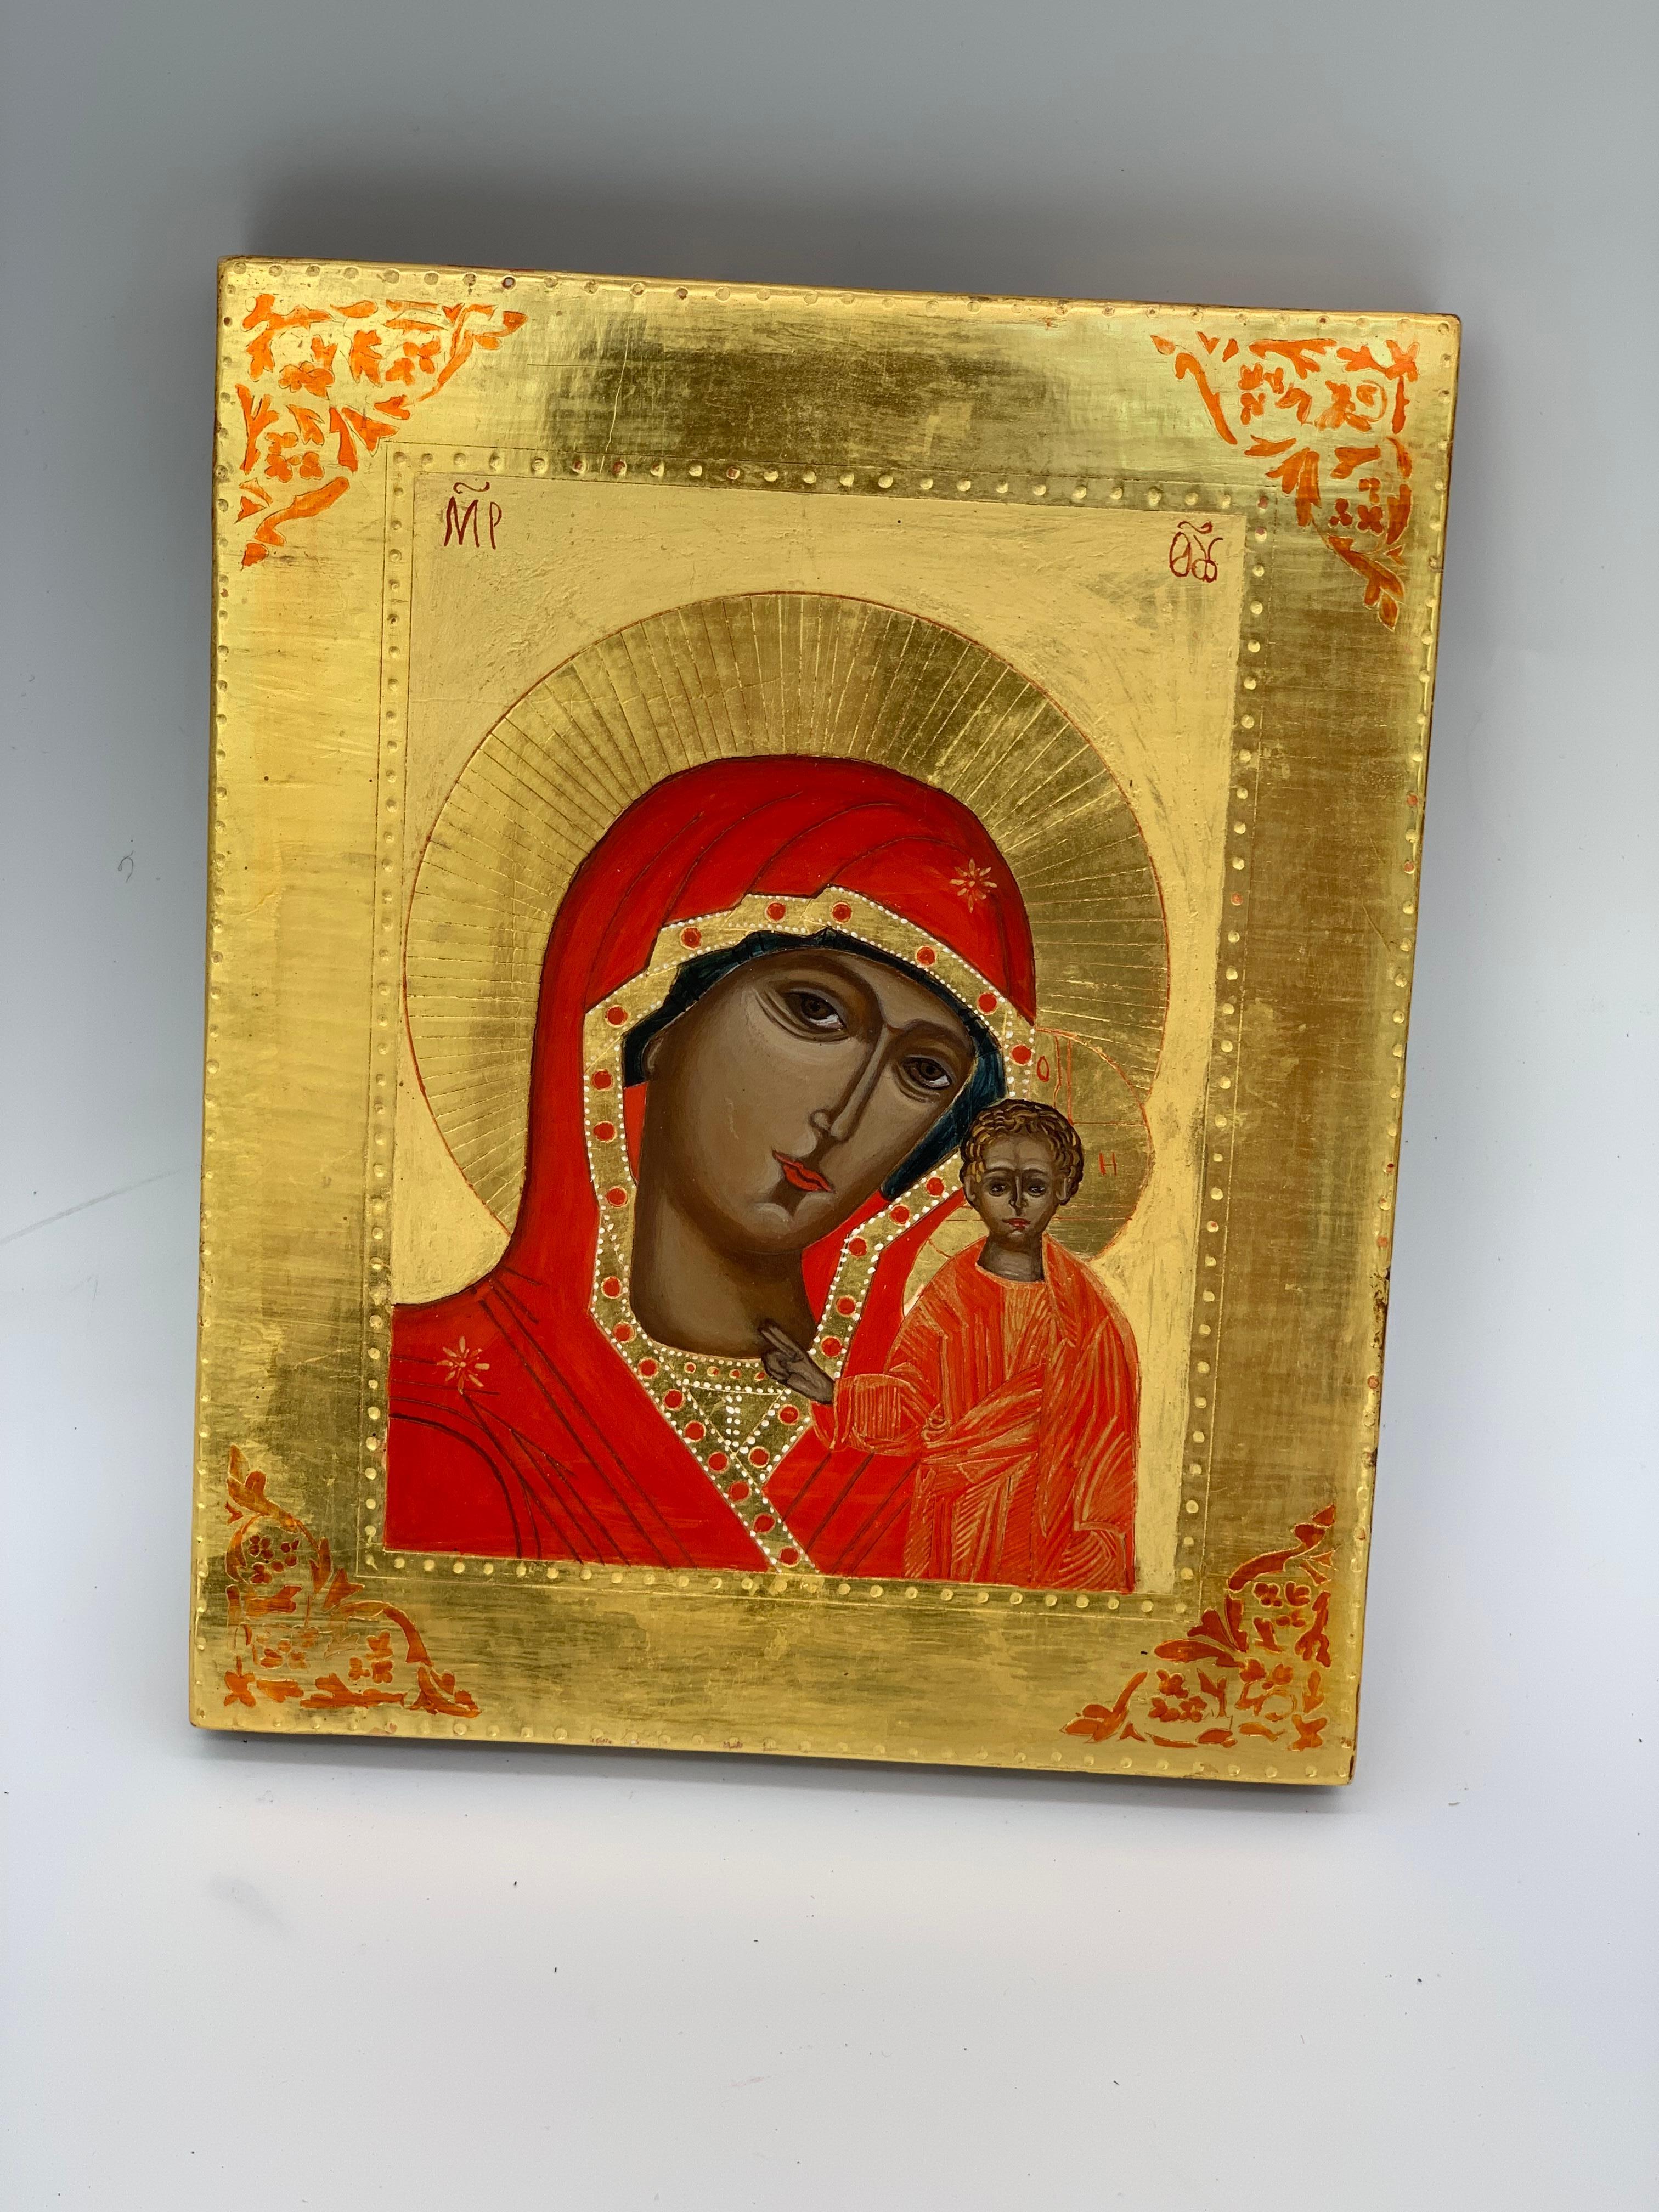 Schöne griechische Ikone von Maria, der Mutter Gottes, mit Jesus neben ihr. Blattgold und rote Details machen diese Ikone so schön.